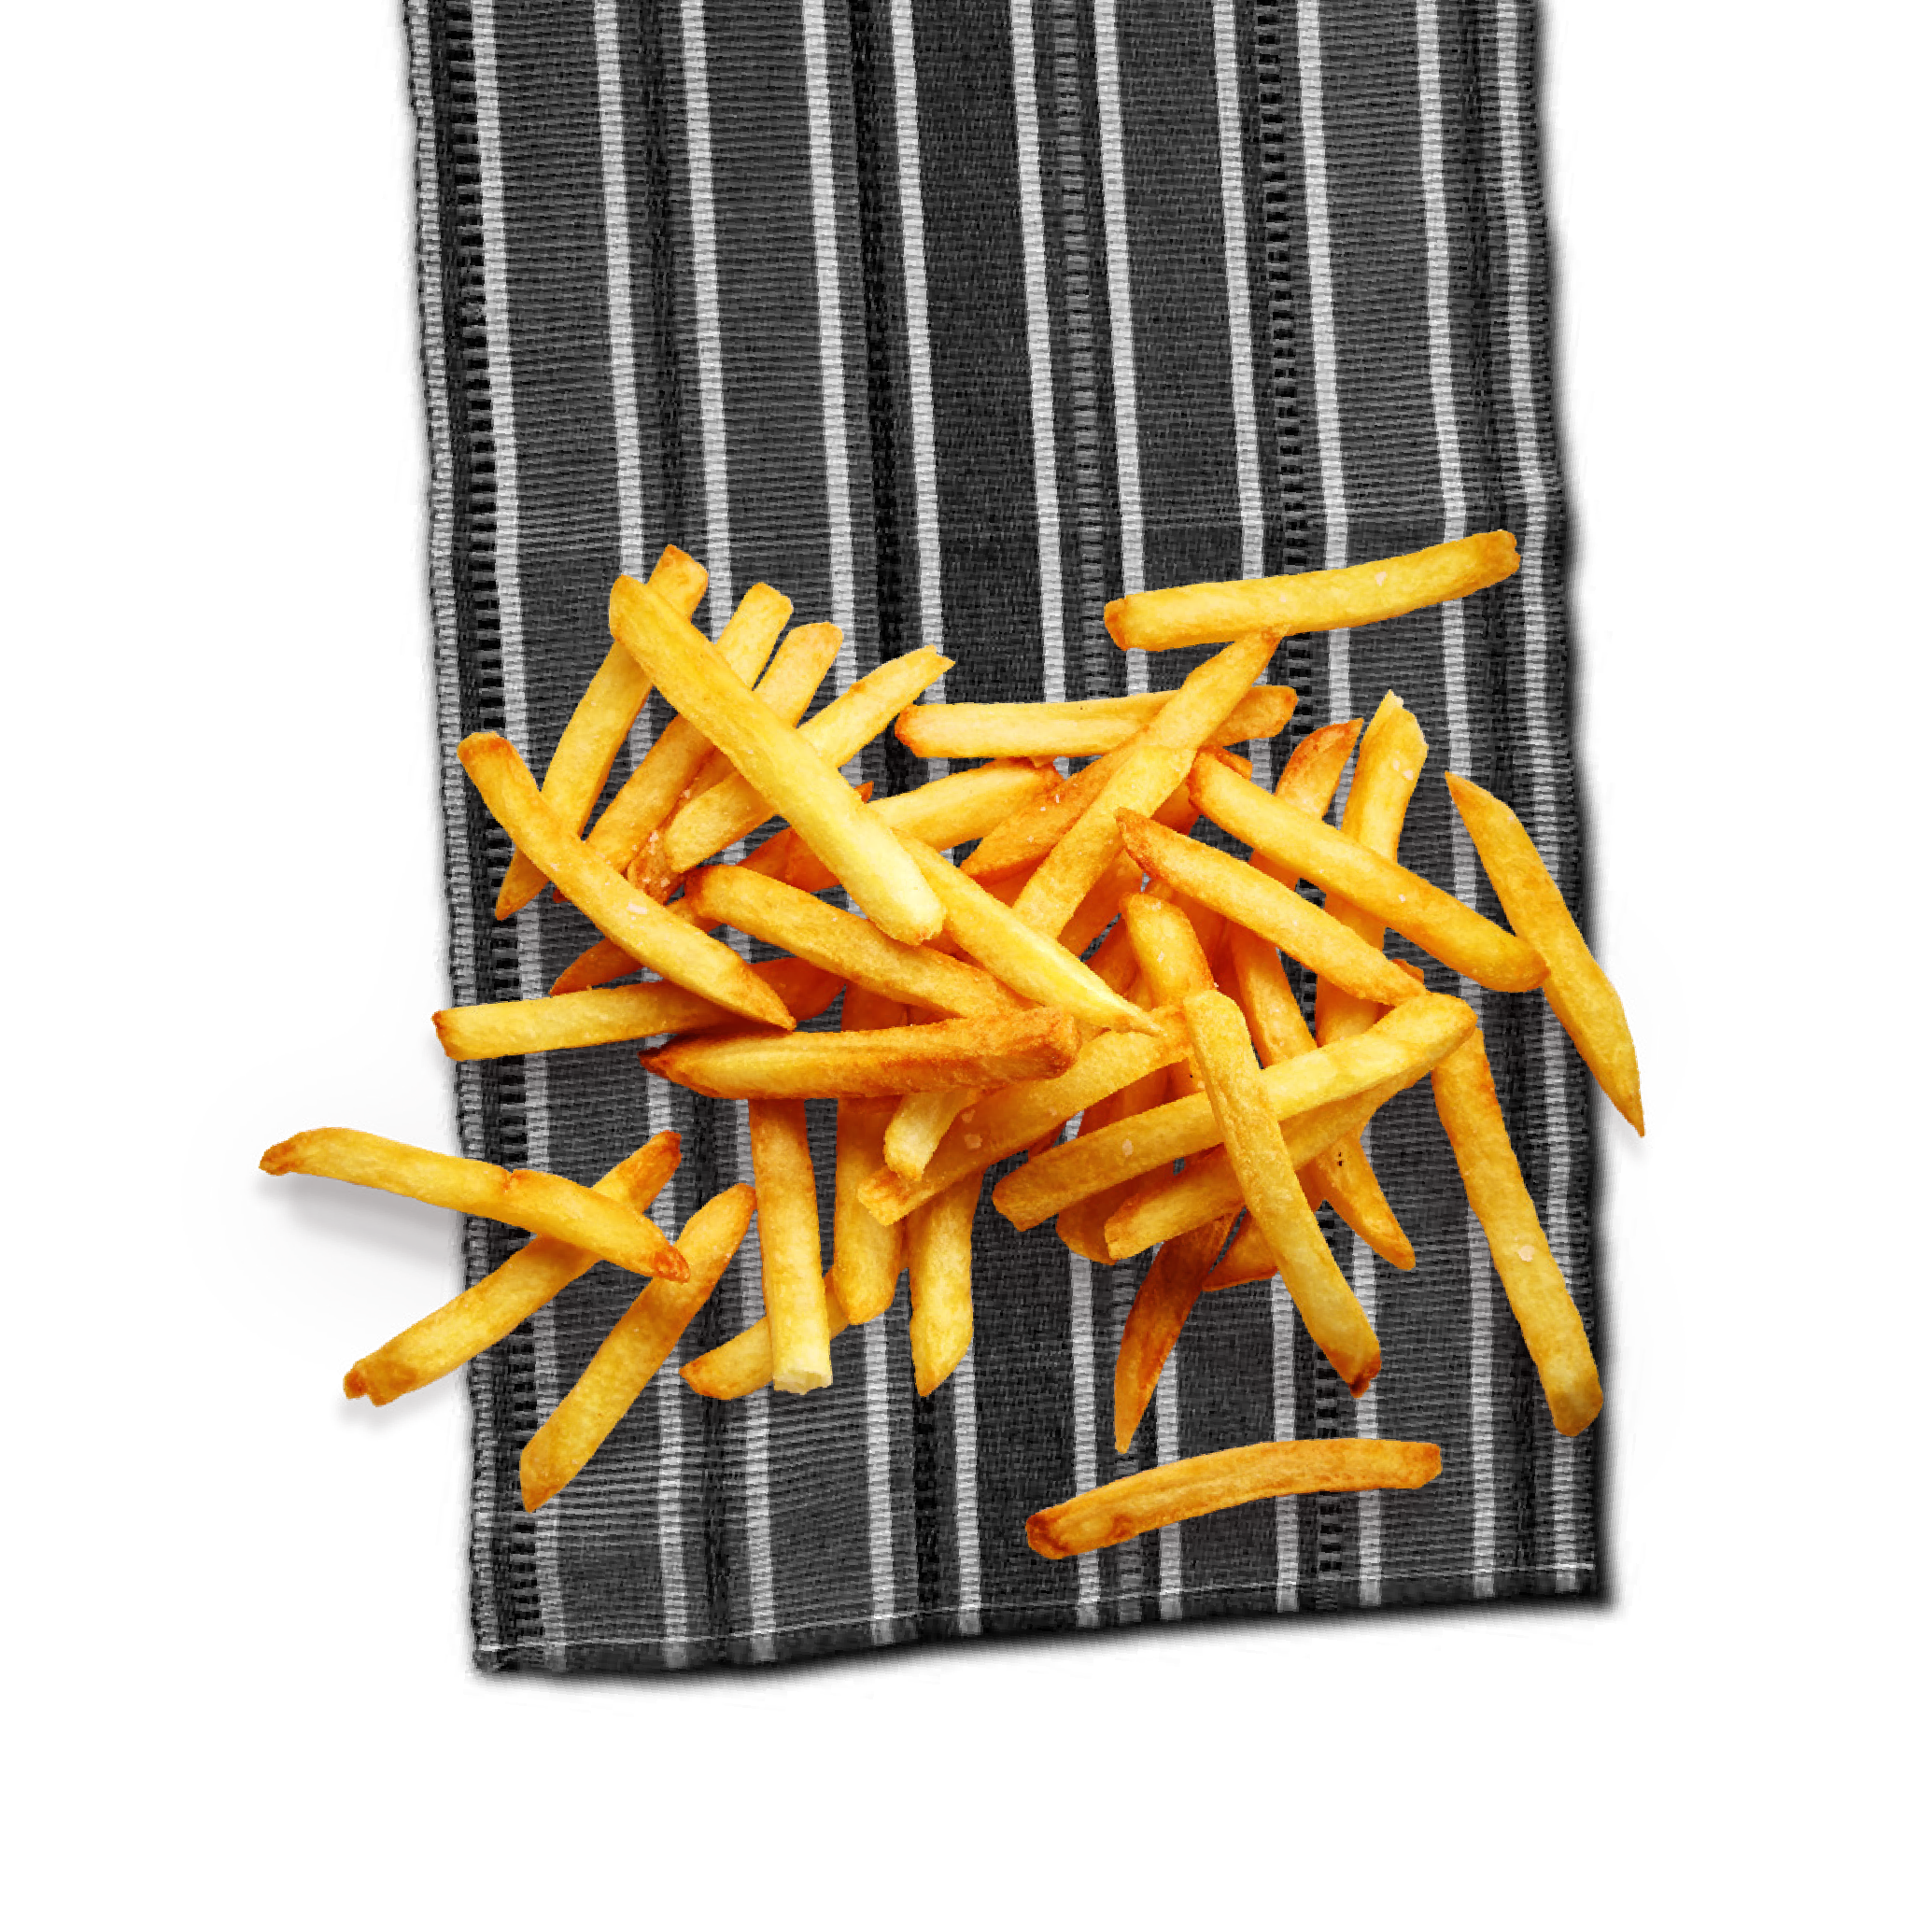 Regular Chips